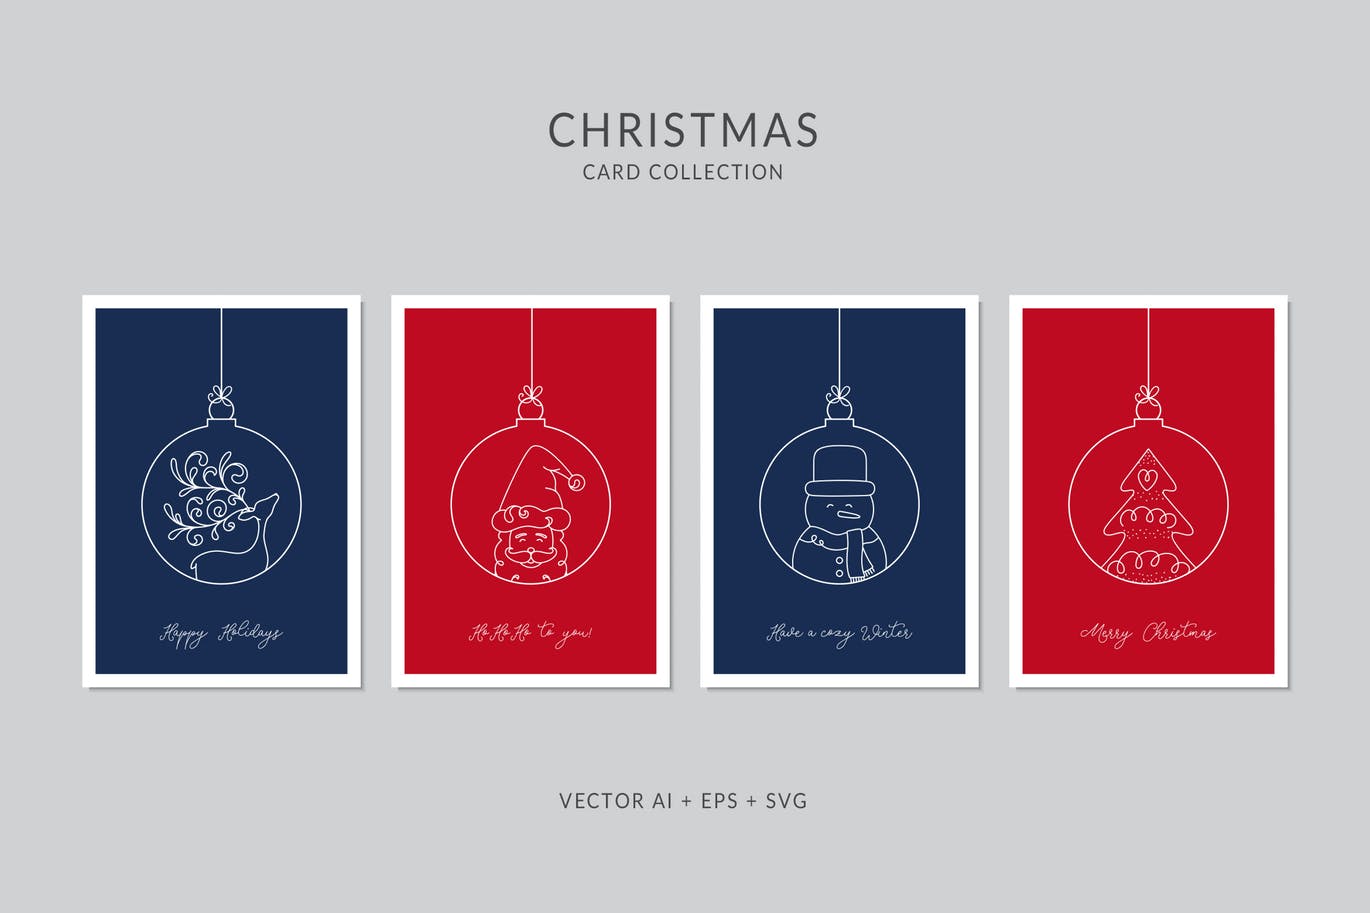 简笔画艺术风格圣诞节贺卡矢量设计模板集v9 Christmas Greeting Card Vector Set插图